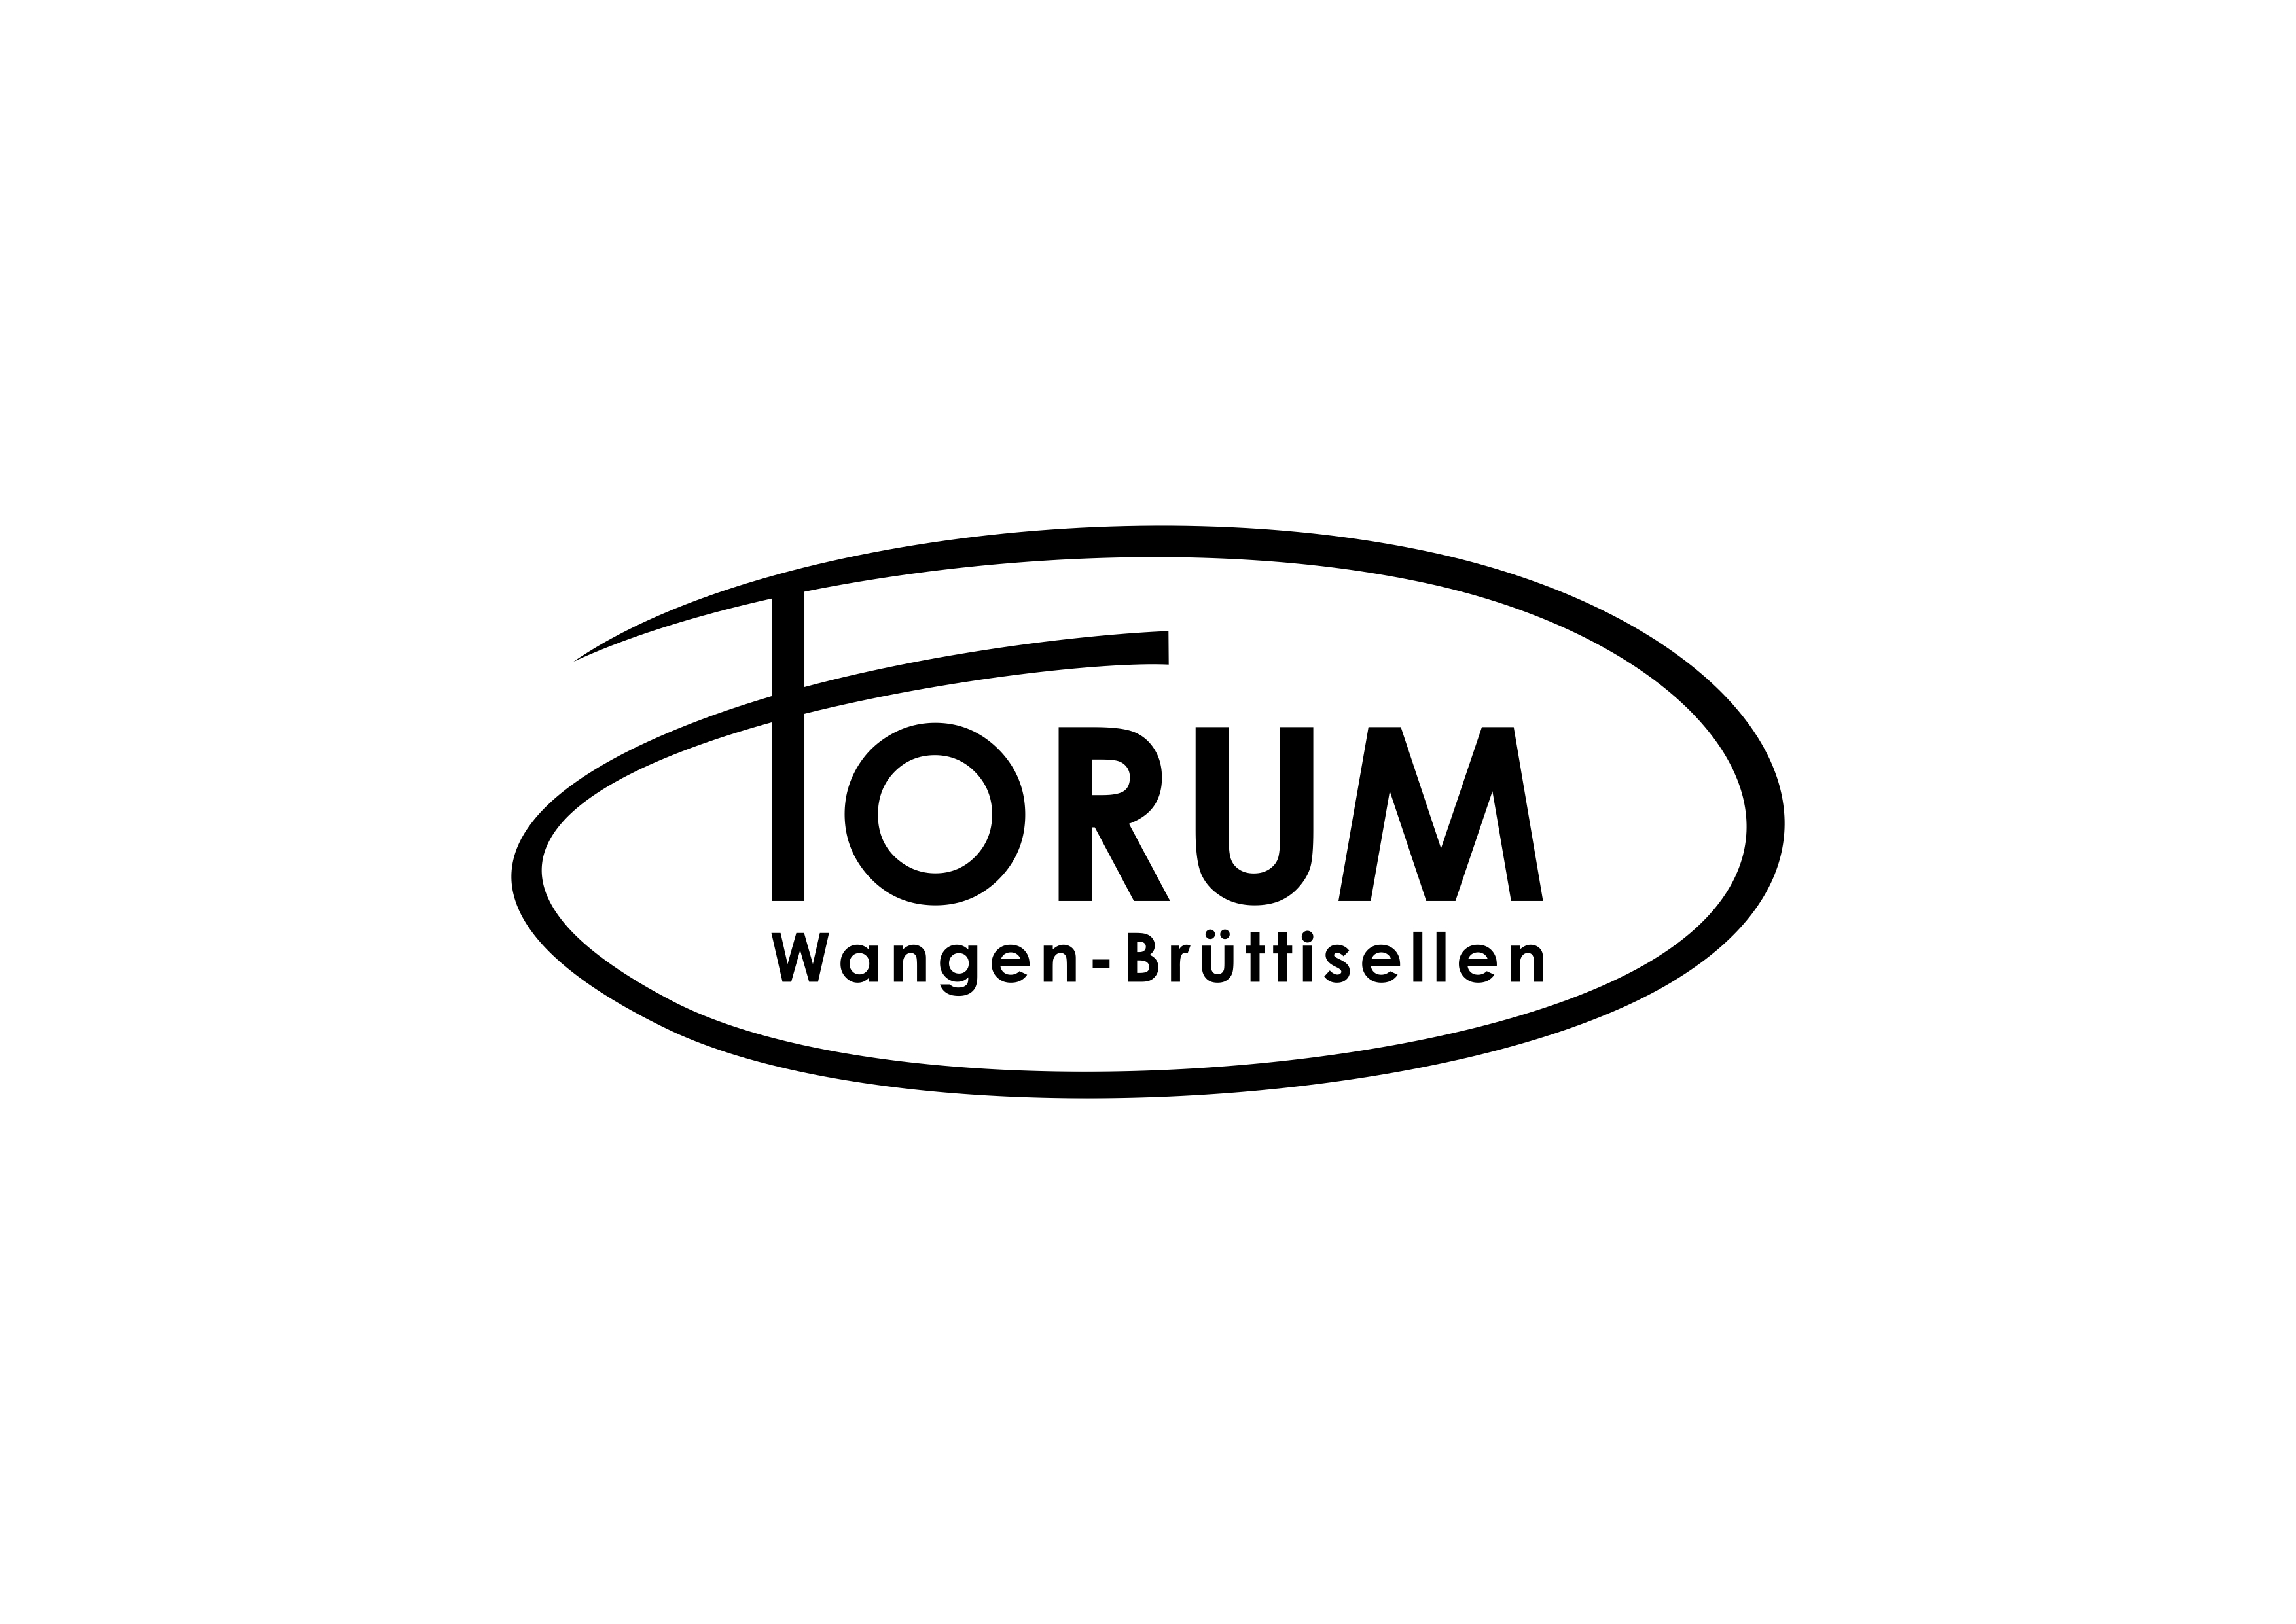 Forum Wangen-Brüttisellen